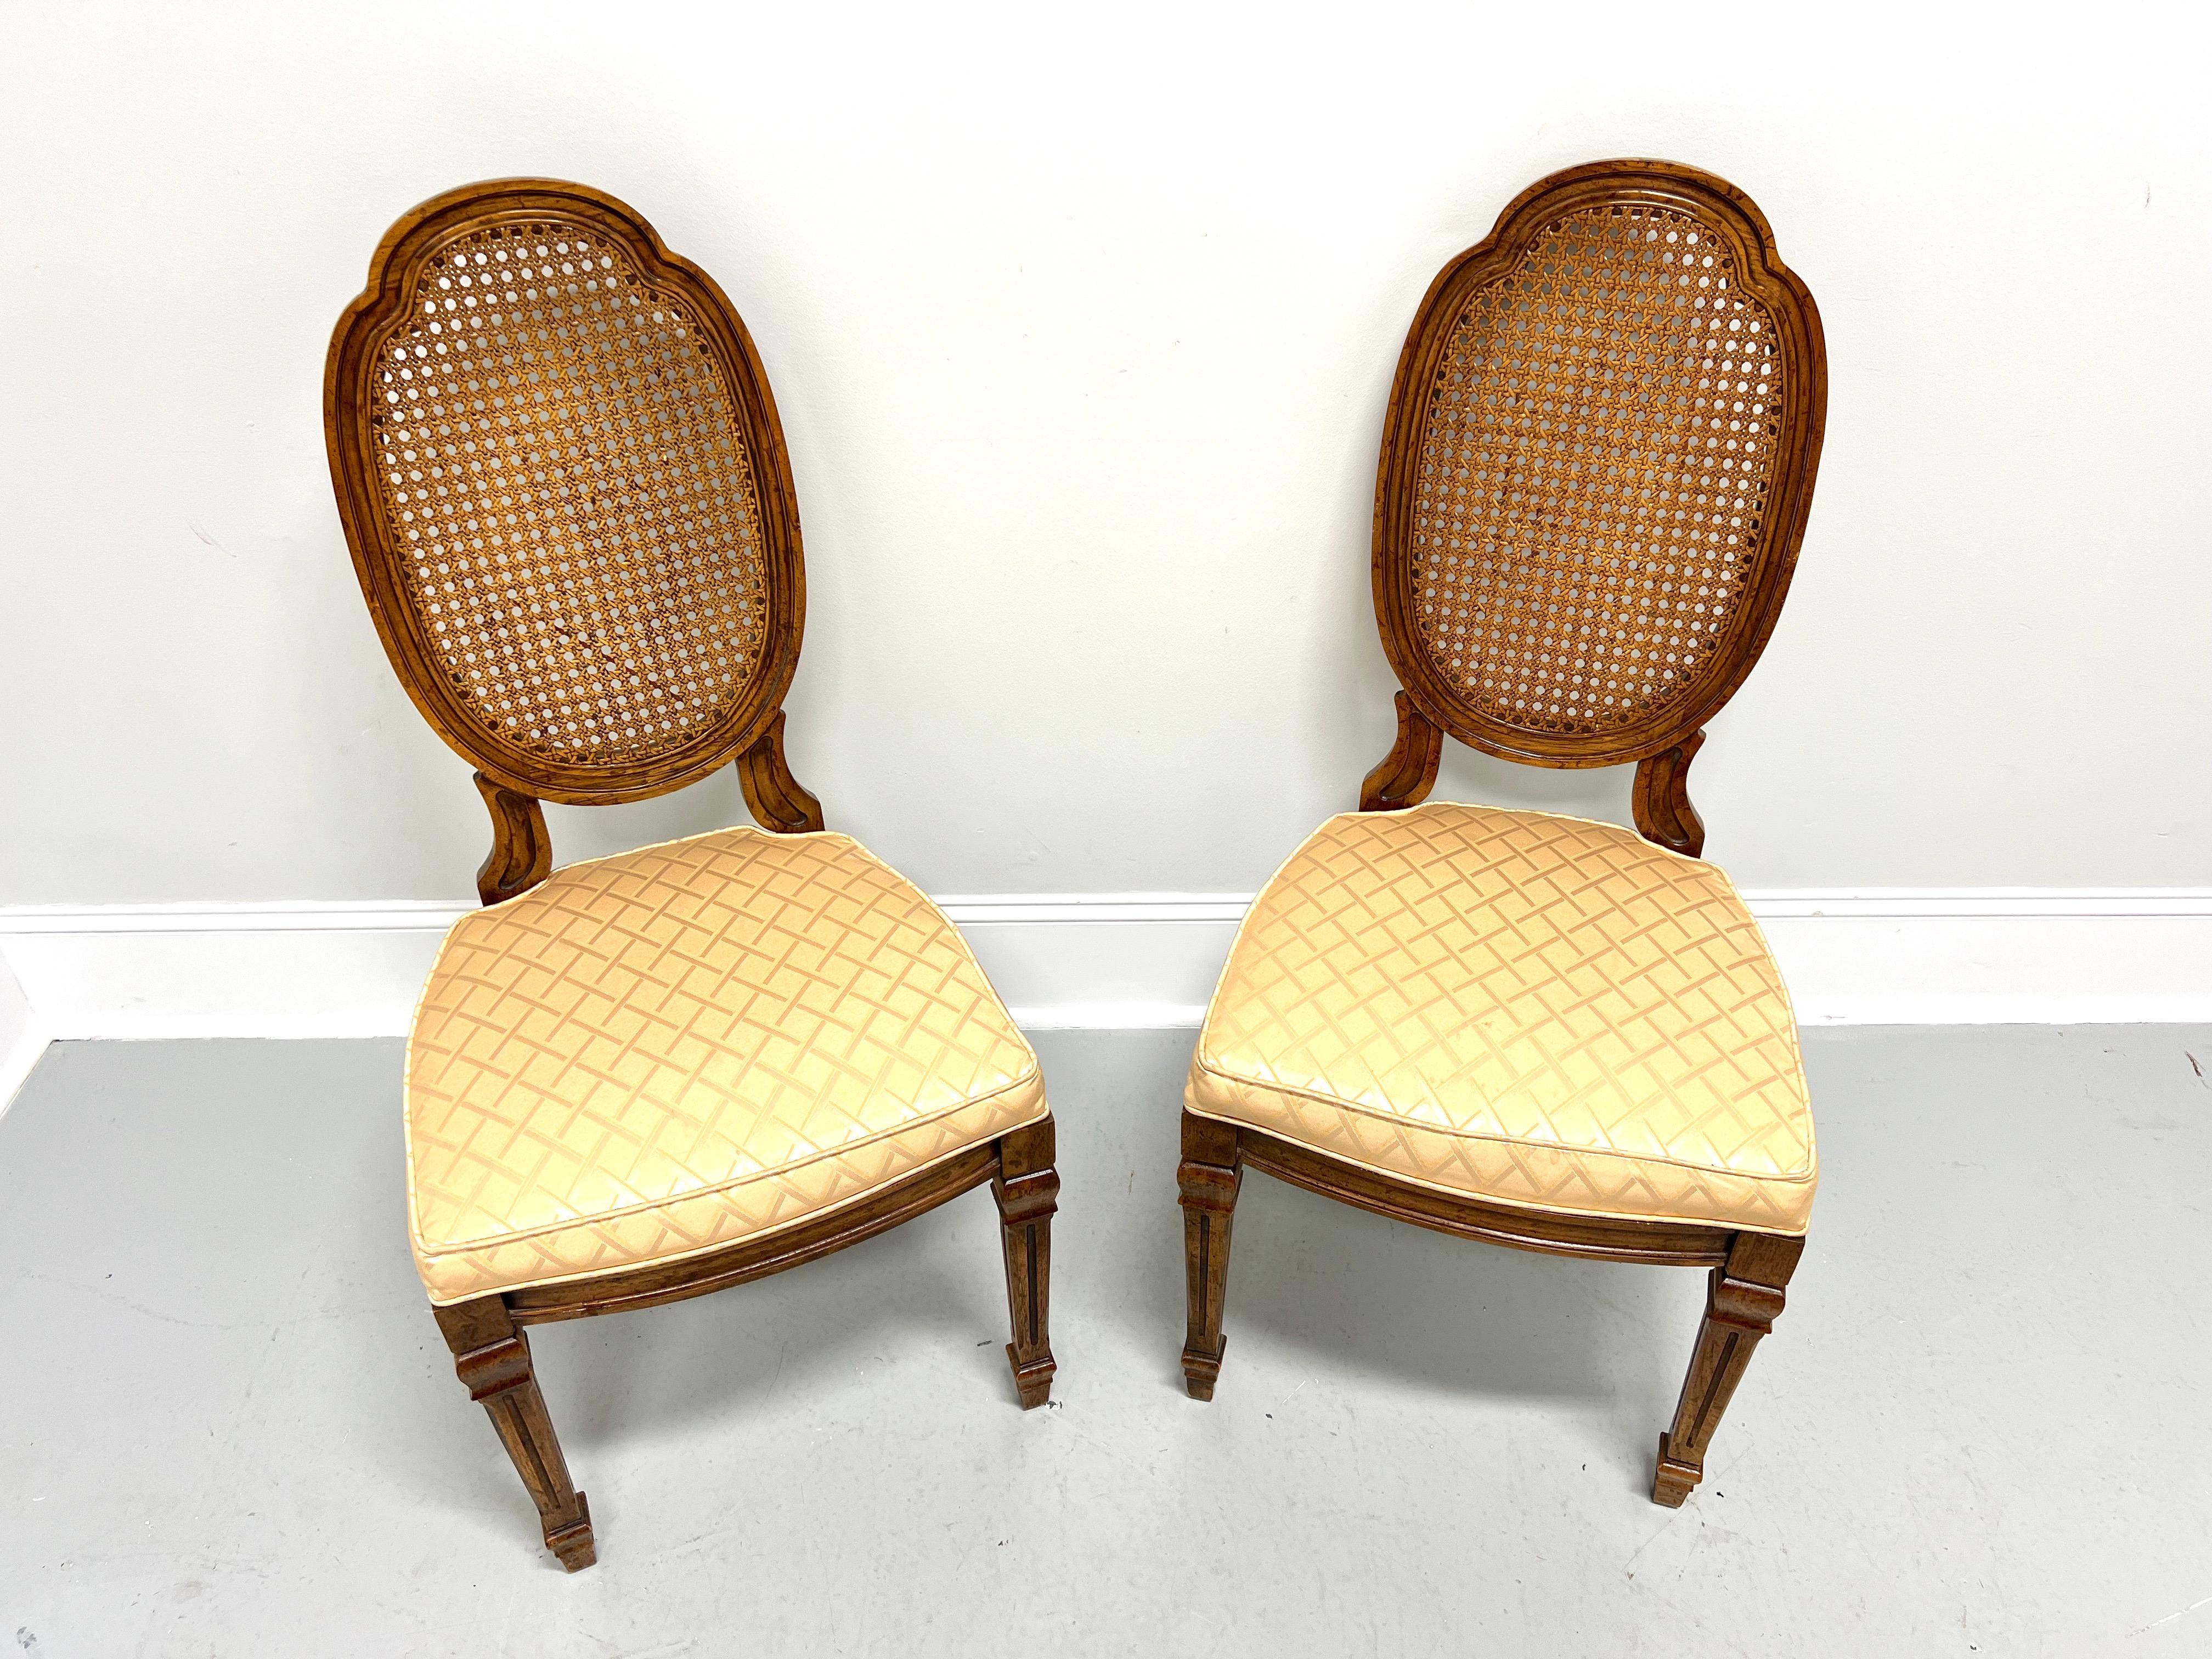 Ein Paar französische Stühle im Louis-XVI-Stil von Drexel Heritage. Nussbaumholz mit leicht abgenutzter Oberfläche, geschnitzte ovale schildförmige Rückenlehnen, gepolsterte Sitze mit goldfarbenem Rautenmuster, geschnitzte Schürze, spitz zulaufende